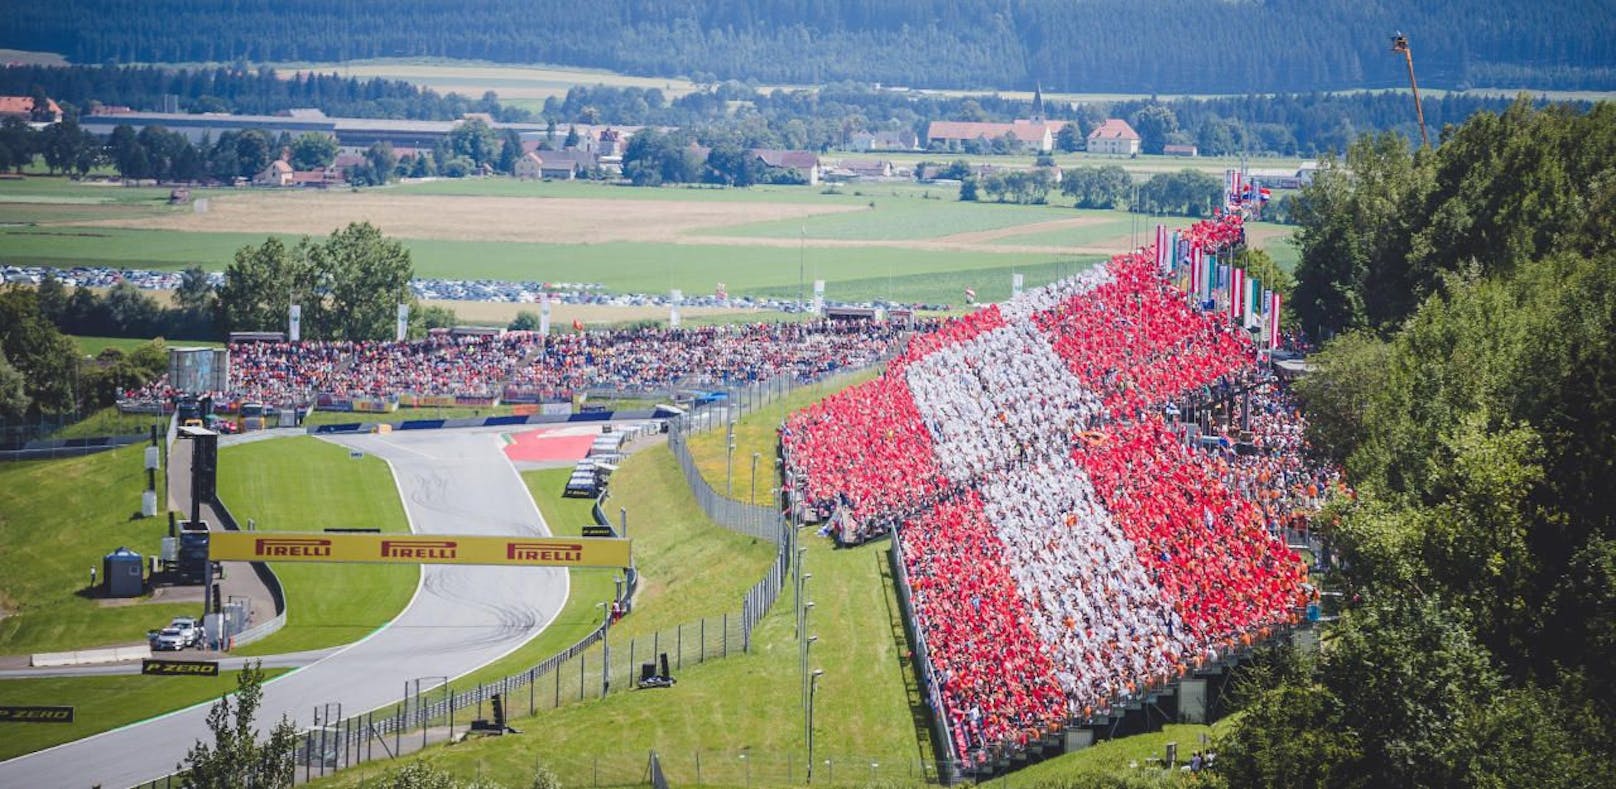 1.700 € für Zimmer bei Österreich-GP – Touristiker sauer